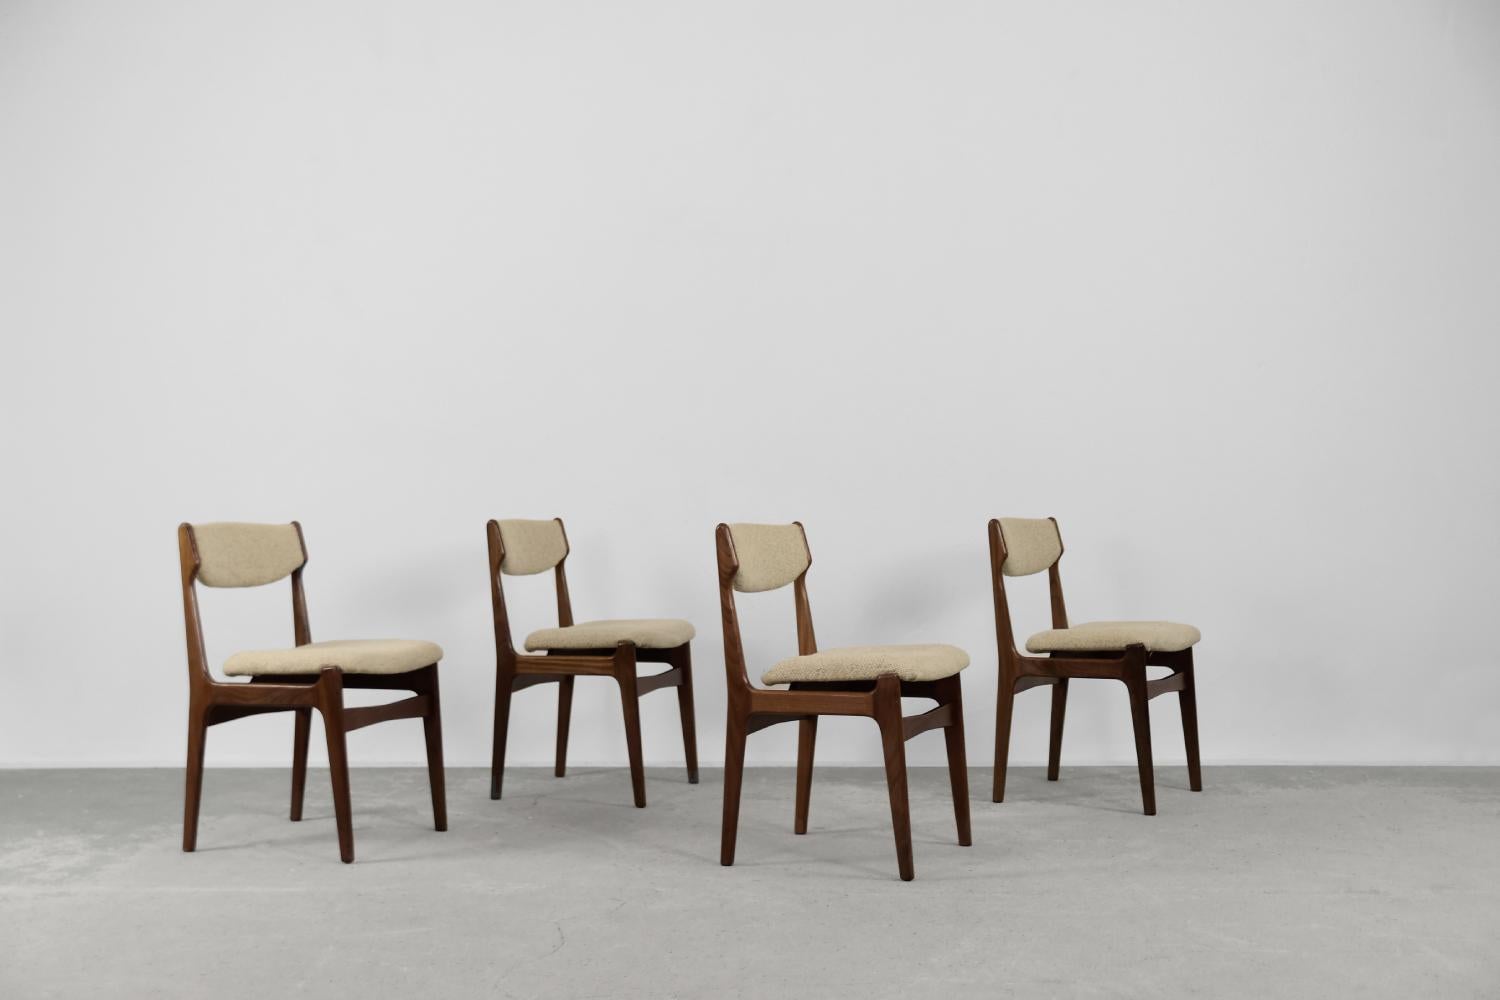 Dieses Set aus vier eleganten Stühlen wurde in den 1960er Jahren in Dänemark hergestellt. Sie sind aus massivem Teakholz in einem dunklen Braunton gefertigt. Der Sitz und die Rückenlehne sind mit einem hochwertigen, dicken beigen Wollstoff